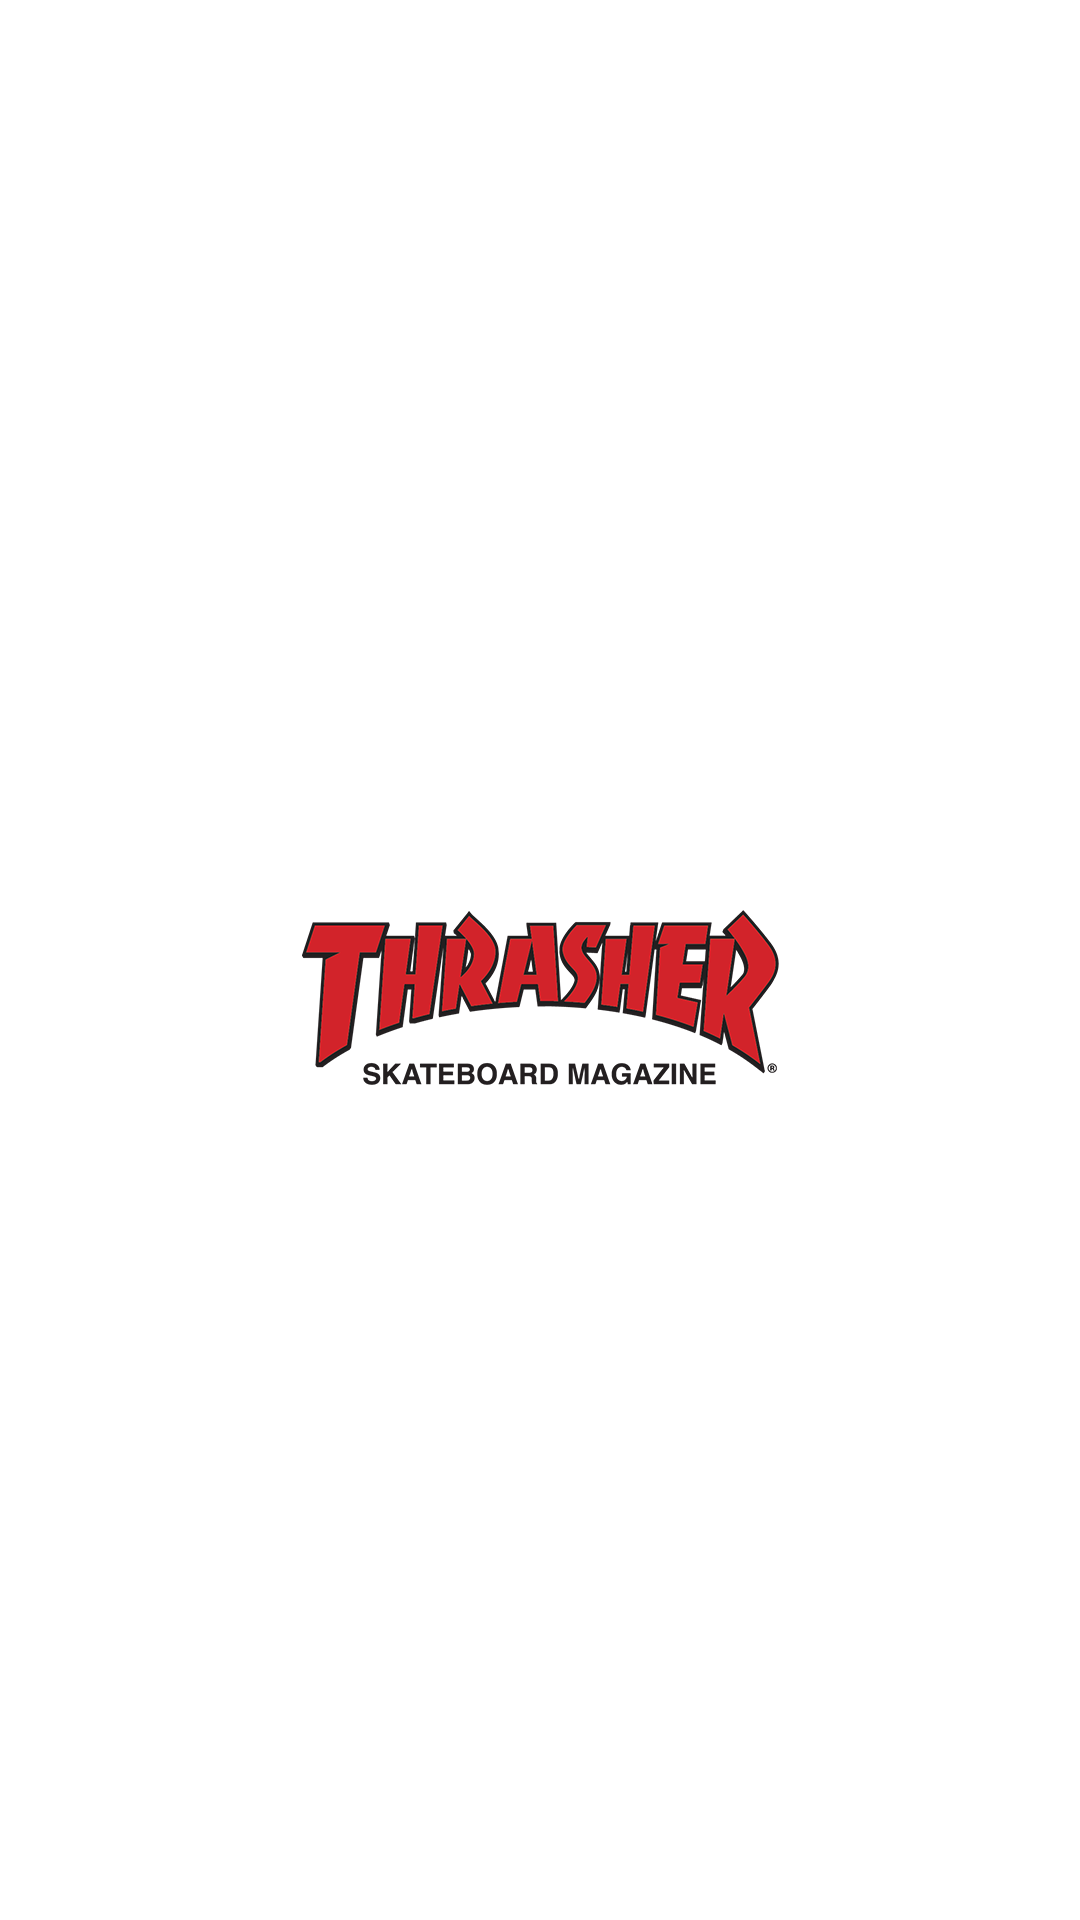 Thrasher Skateboard Magazine Fonte: Thrasher. Hypebeast wallpaper